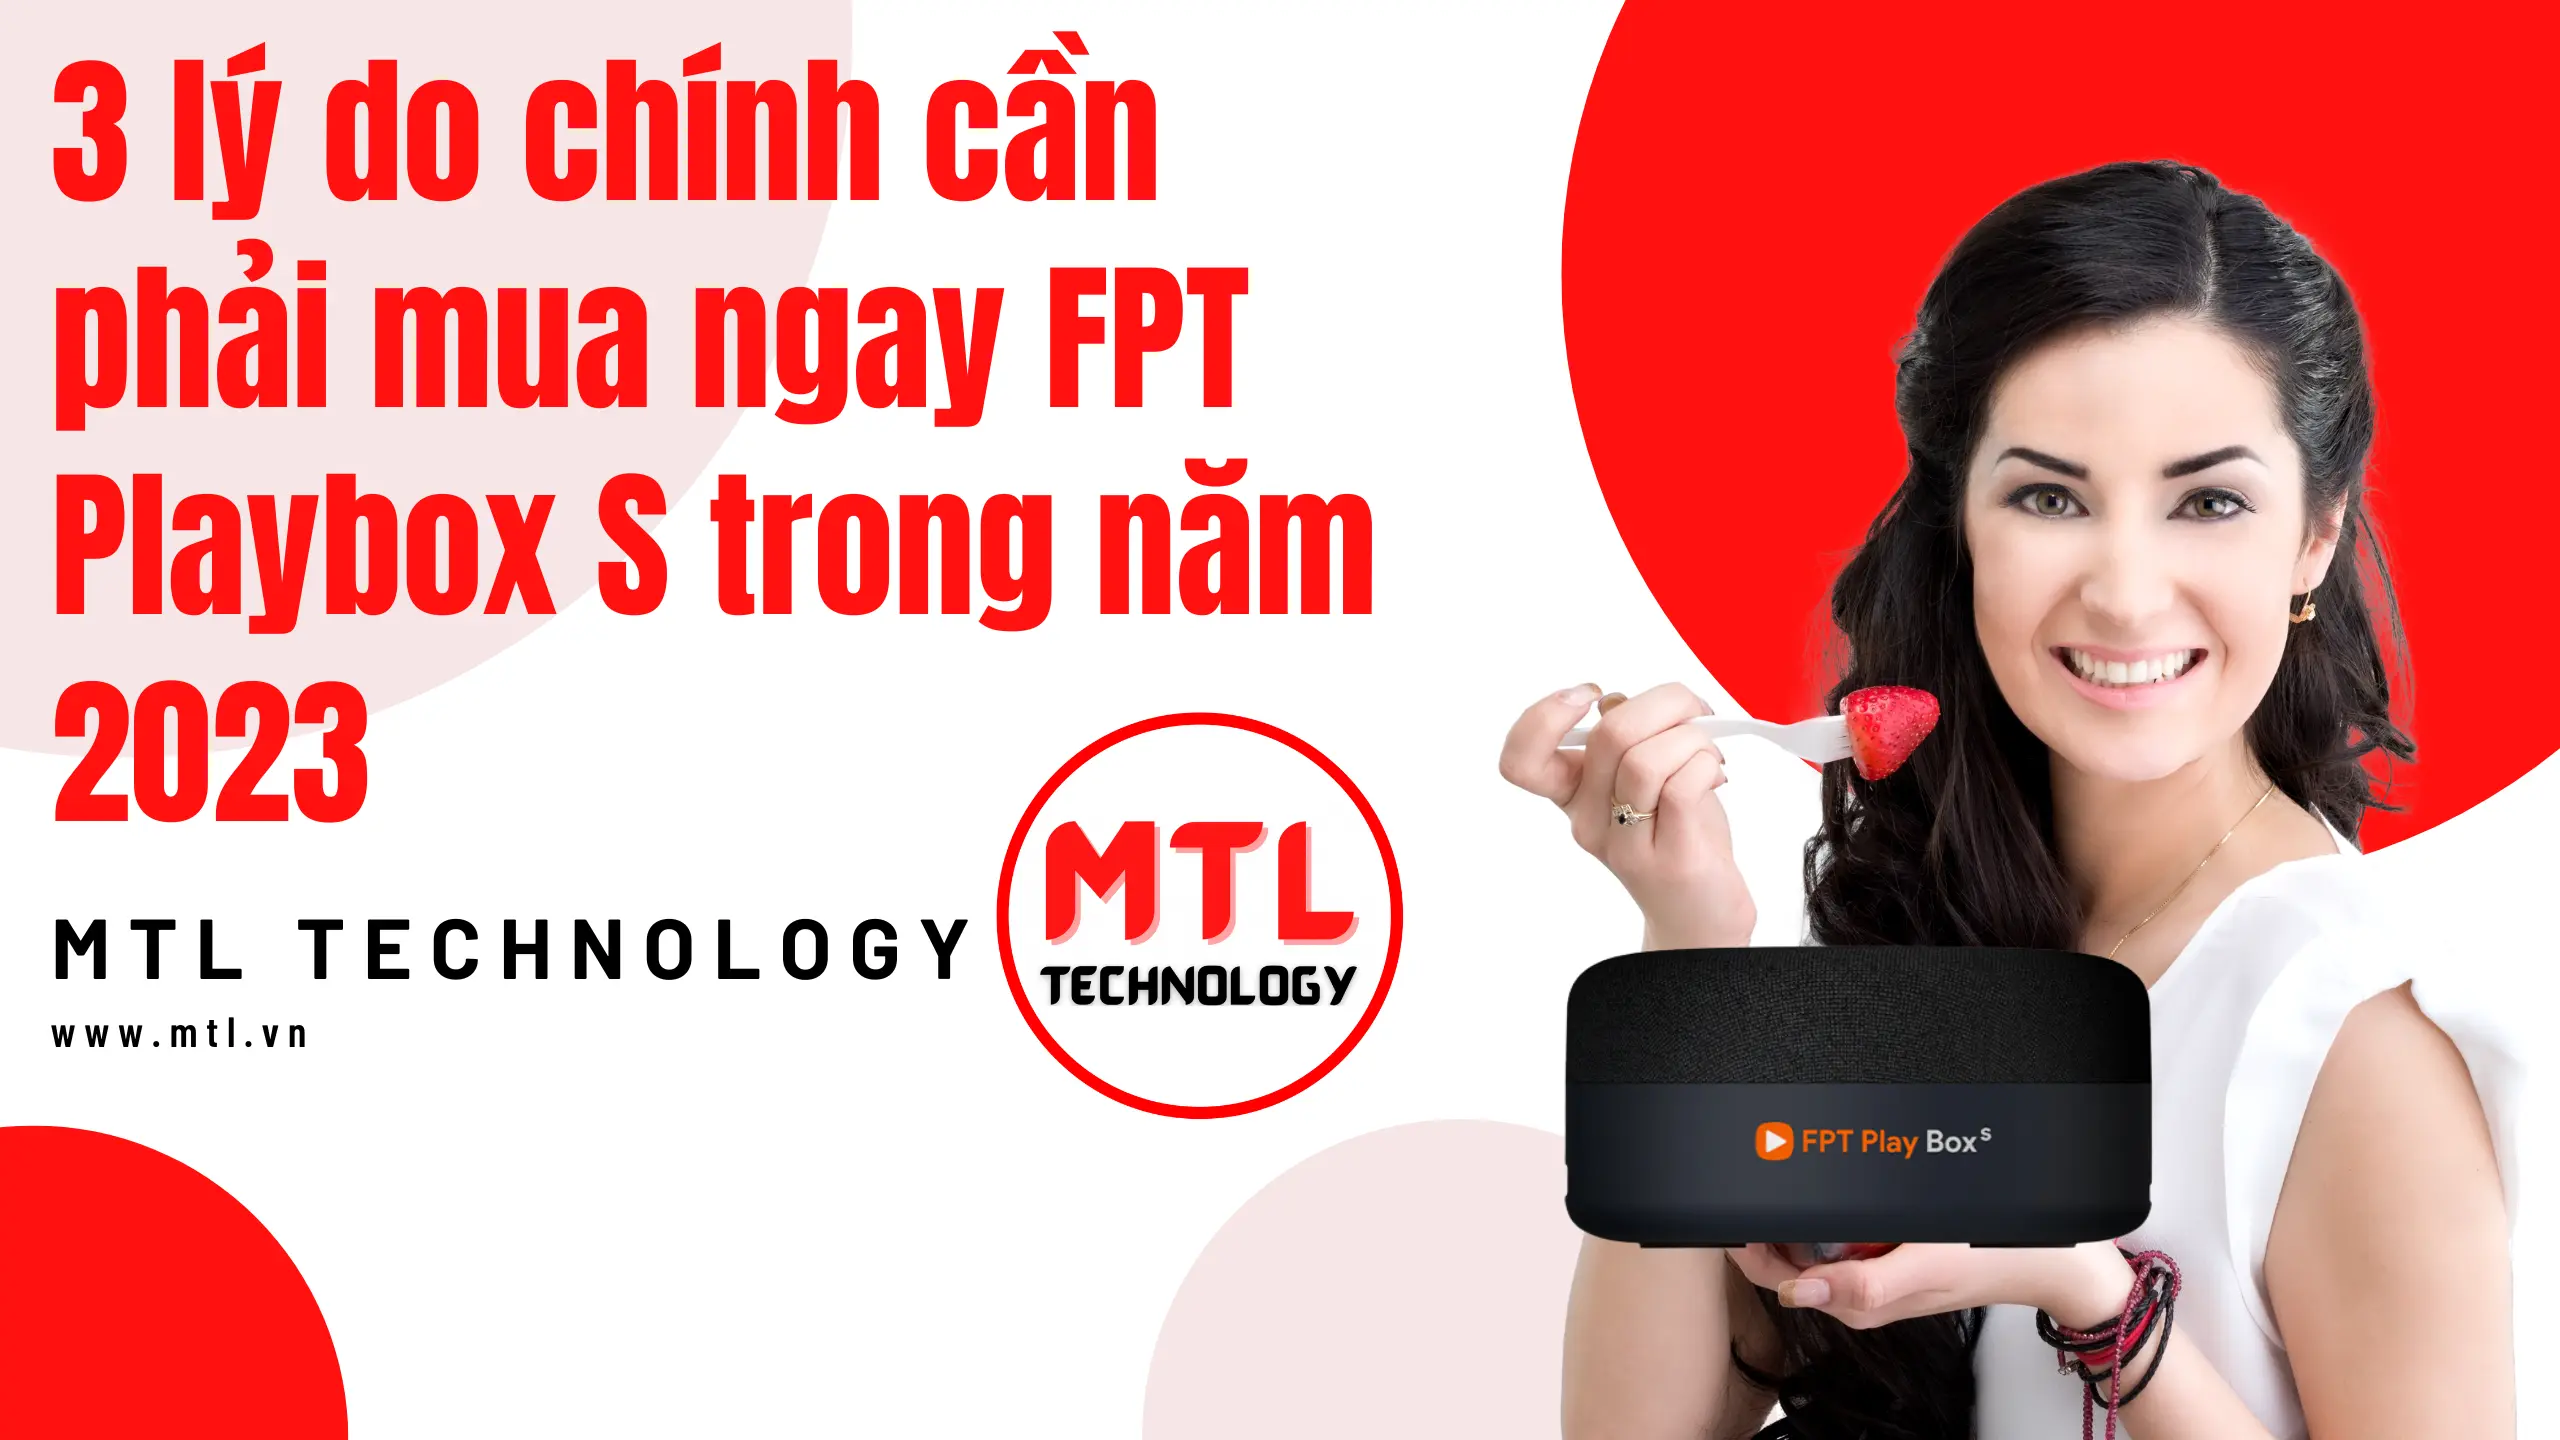 MTL TECHNOLOGY